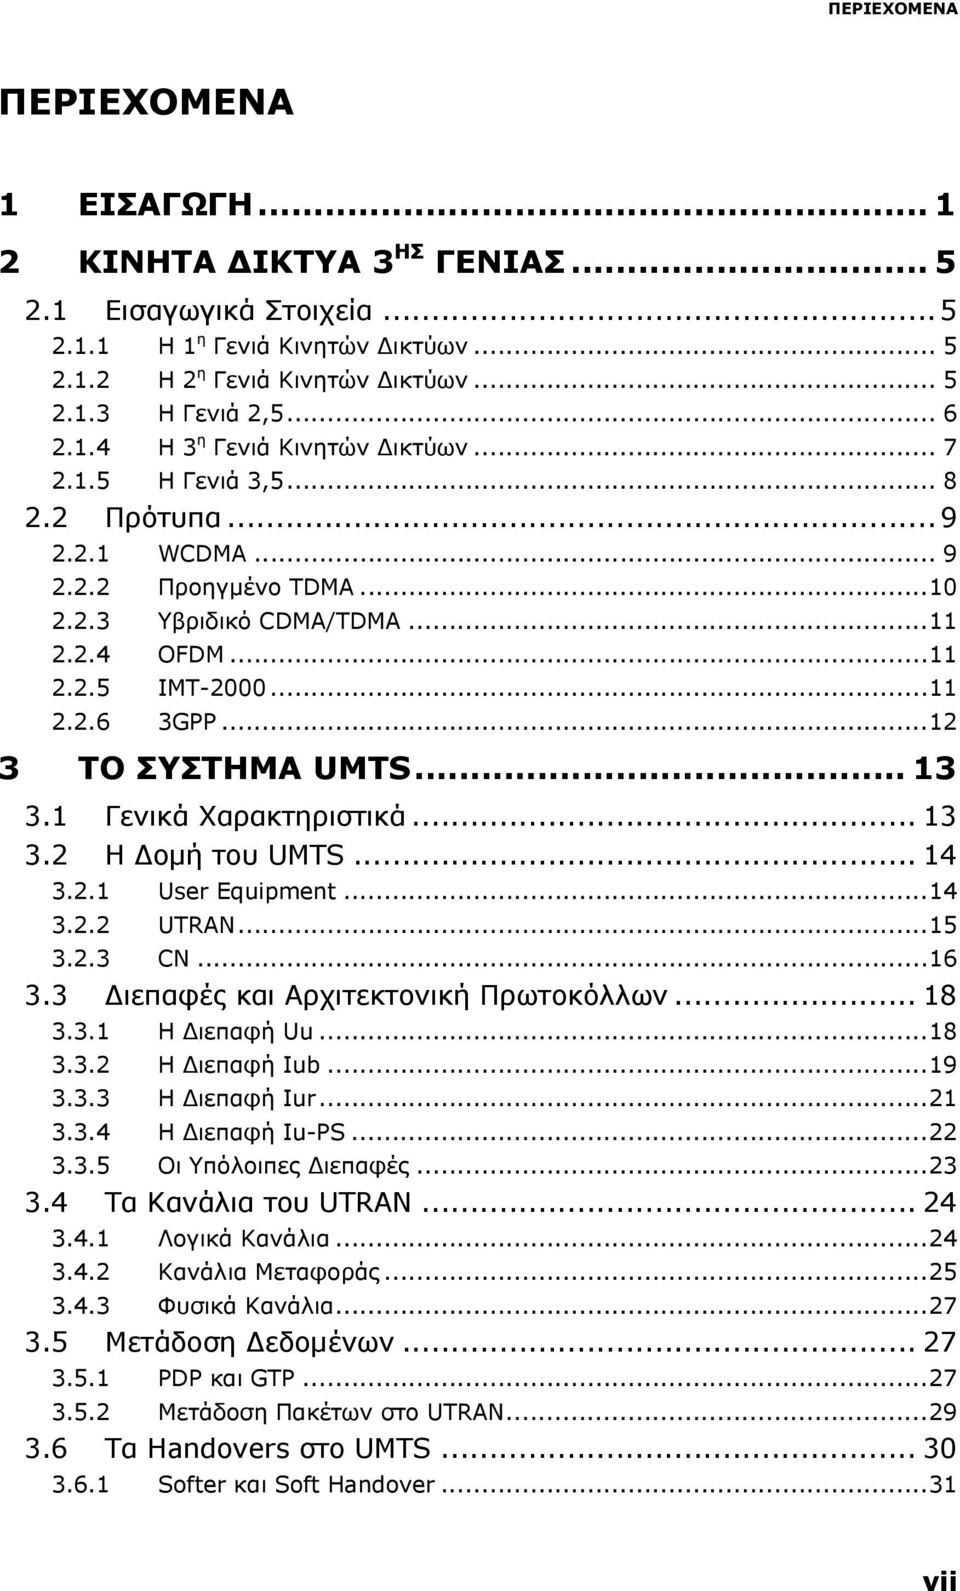 ..12 3 ΤΟ ΣΥΣΤΗΜΑ UMTS... 13 3.1 Γενικά Χαρακτηριστικά... 13 3.2 Η Δομή του UMTS... 14 3.2.1 User Equipment...14 3.2.2 UTRAN...15 3.2.3 CN...16 3.3 Διεπαφές και Αρχιτεκτονική Πρωτοκόλλων... 18 3.3.1 Η Διεπαφή Uu.